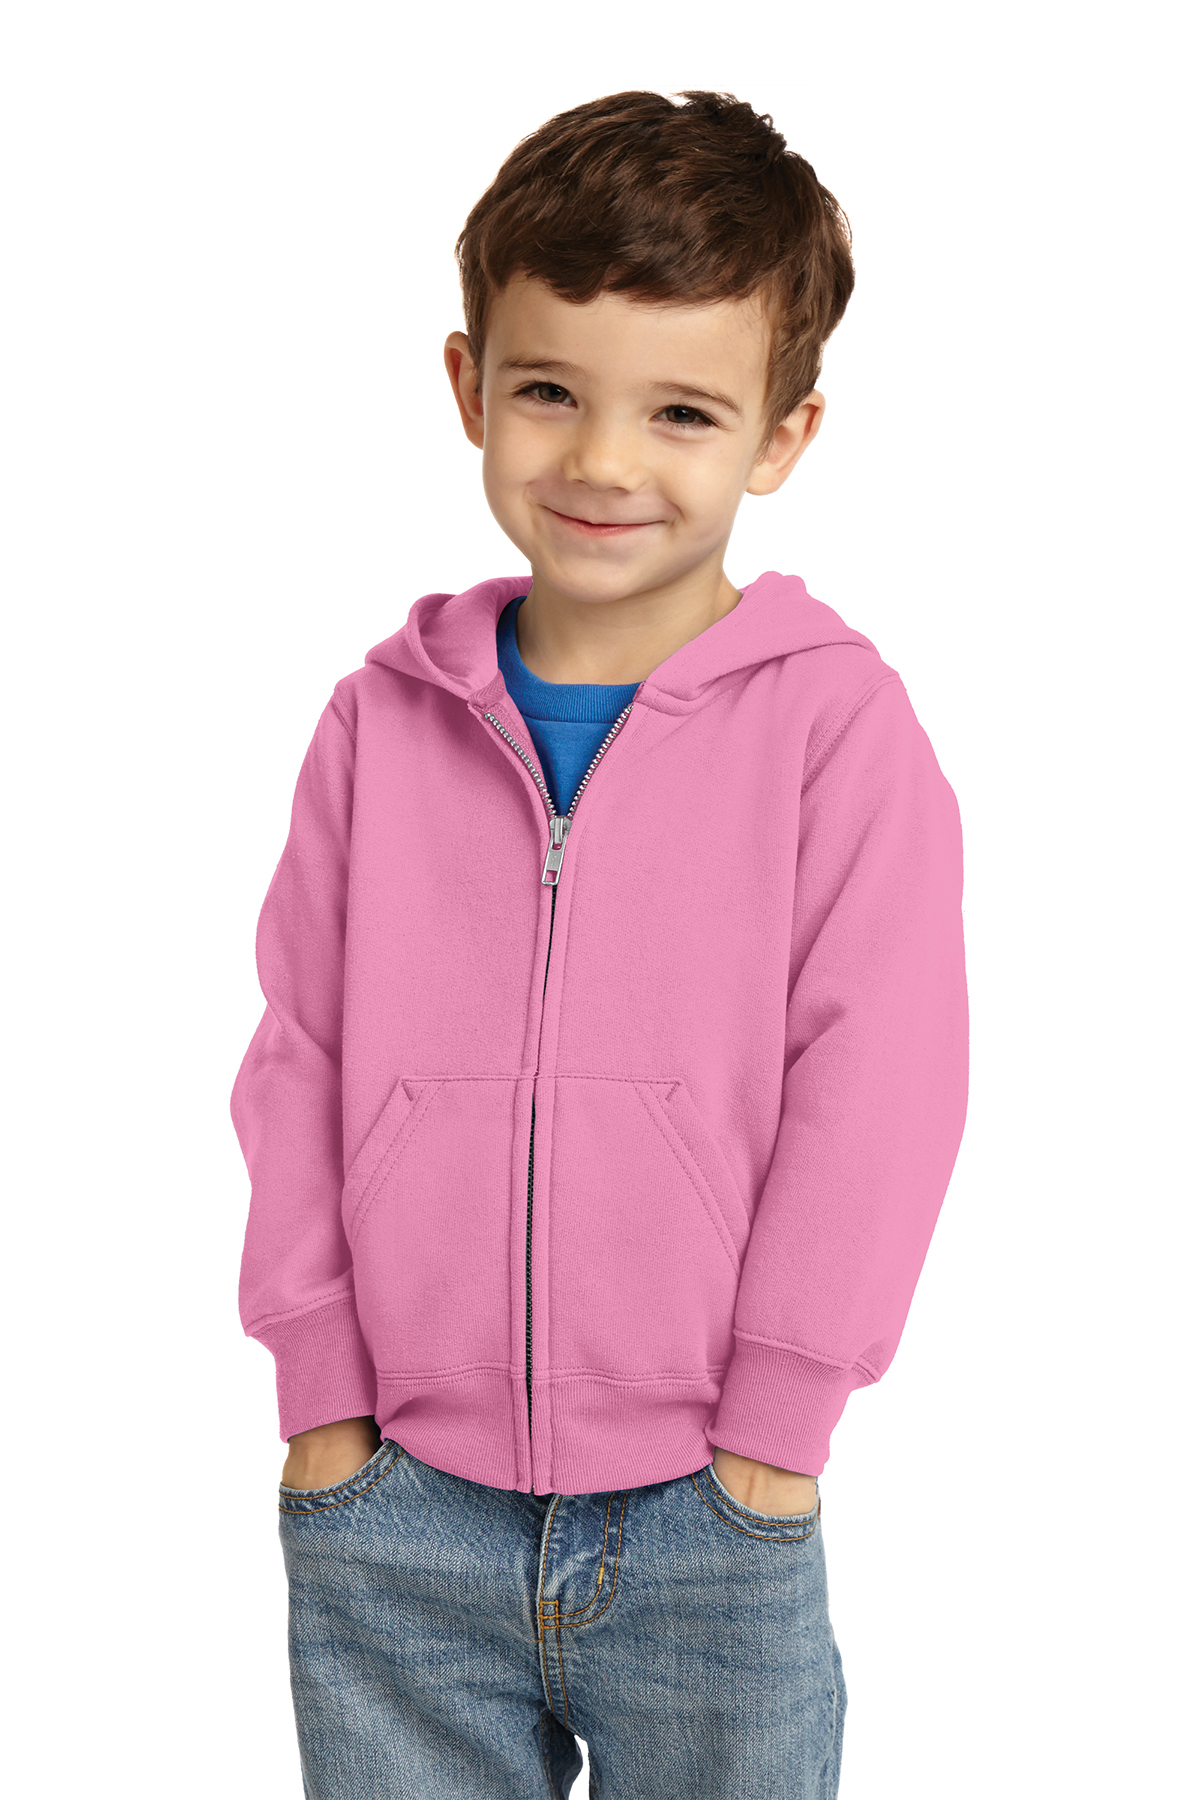 Port & Company Toddler Core Fleece Full-Zip Hooded Sweatshirt | Product ...